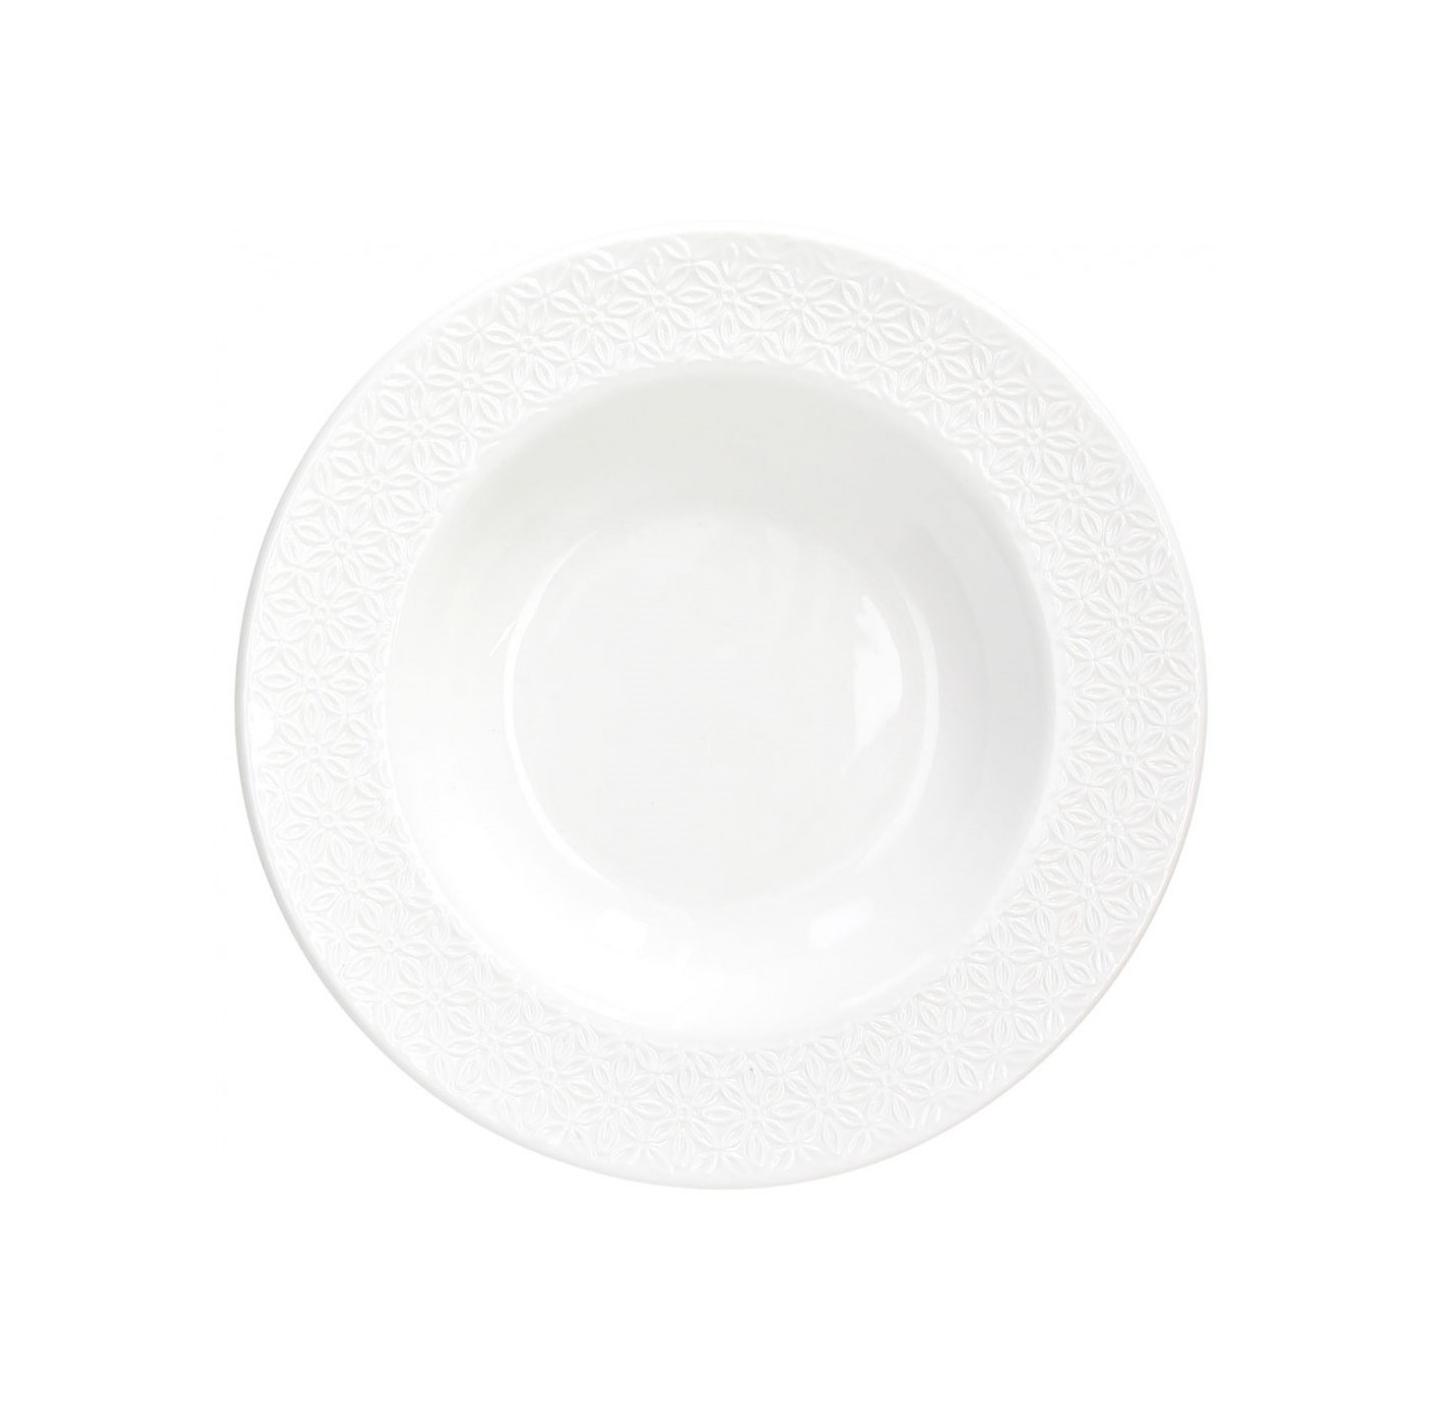 Tognana - Piatto fondo in porcellana linea olimpia Margaret 22 cm bianco